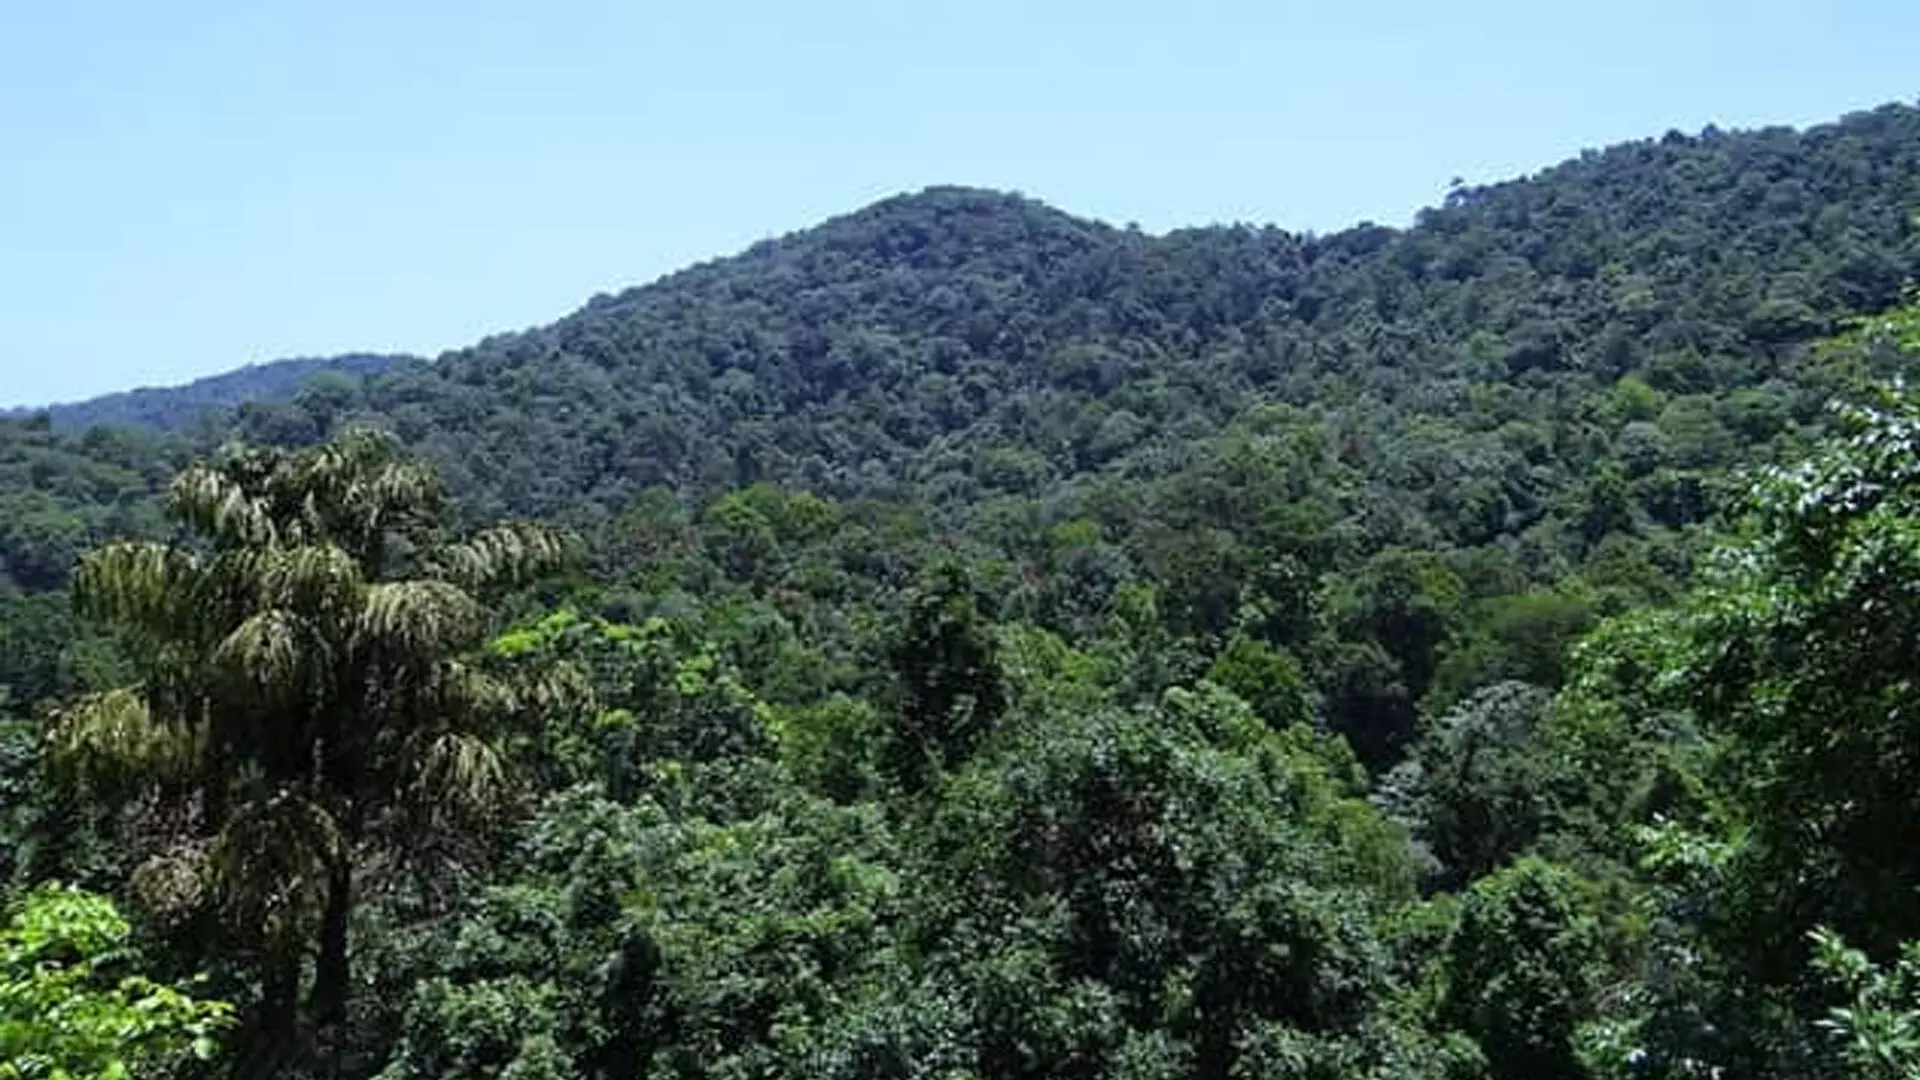 चुनाव अधिकारी अपाहिज व्यक्ति के वोट के लिए केरल के घने जंगलों में गए